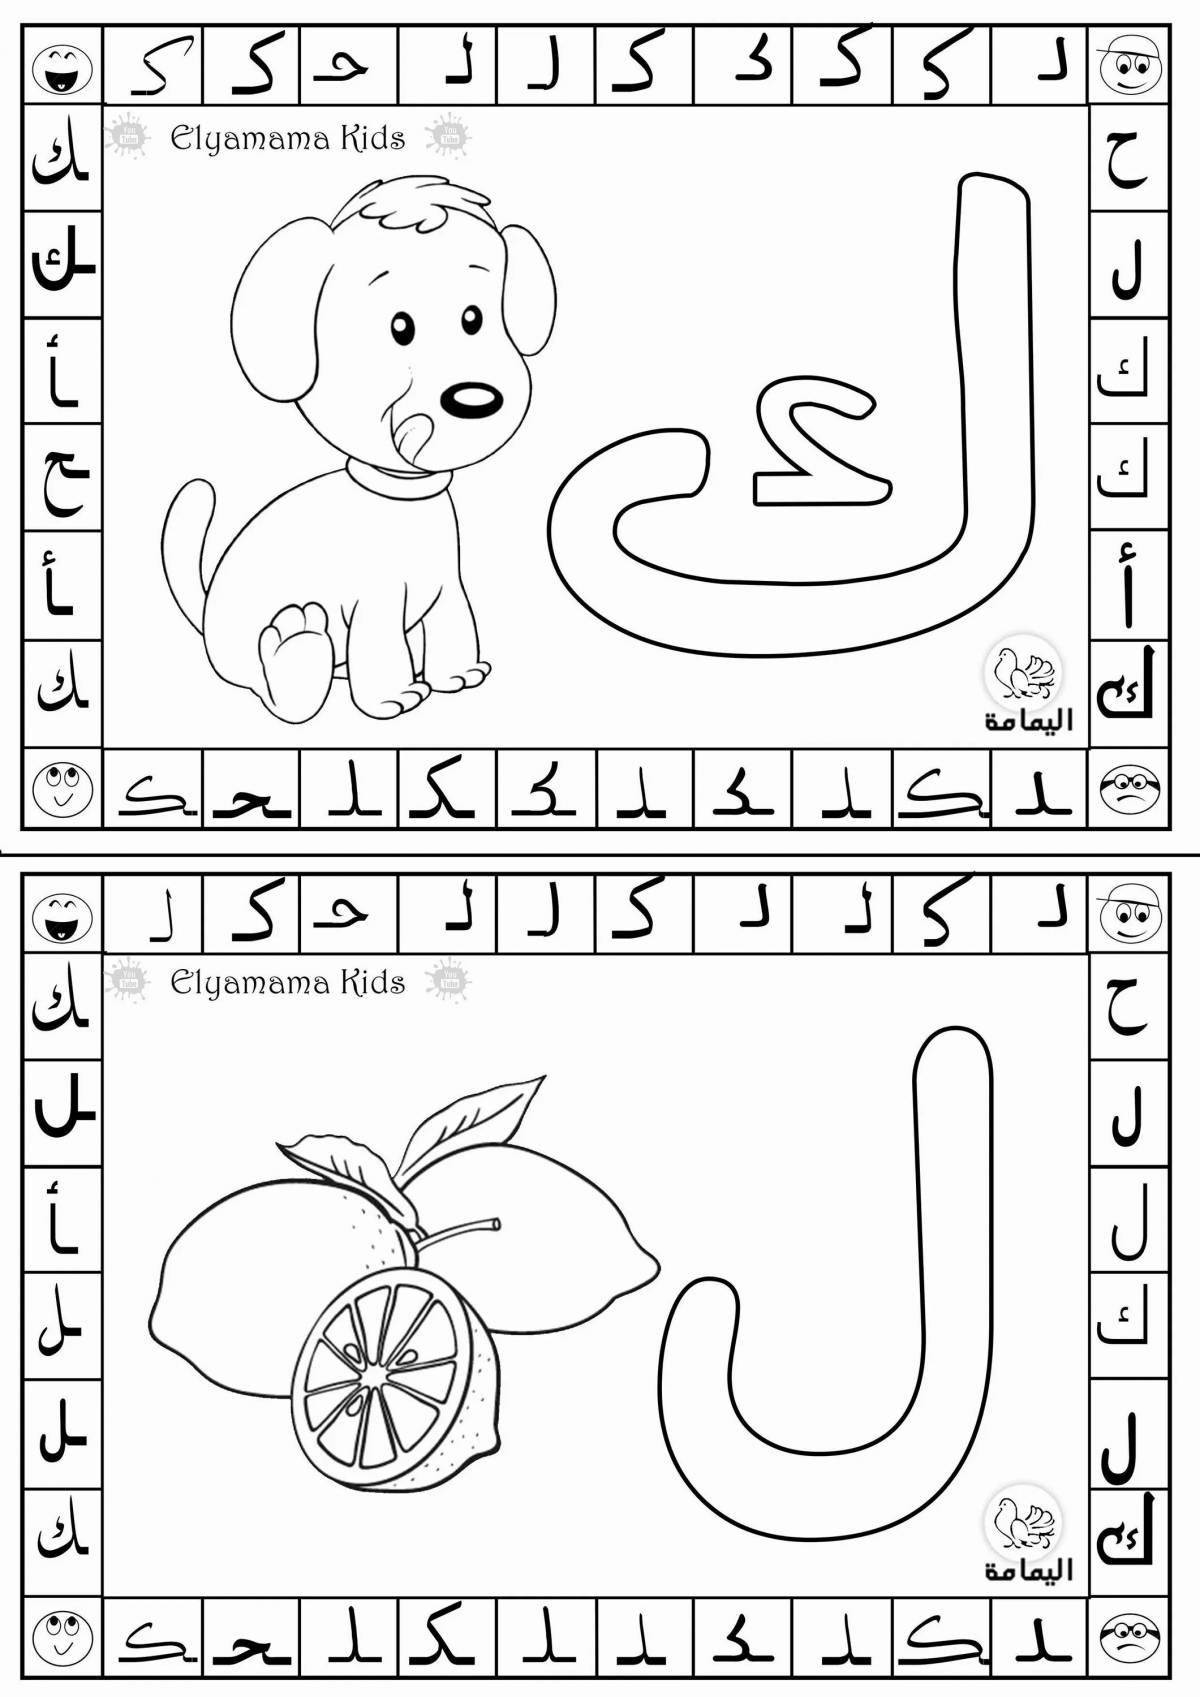 Развлекательная раскраска арабского алфавита для детей